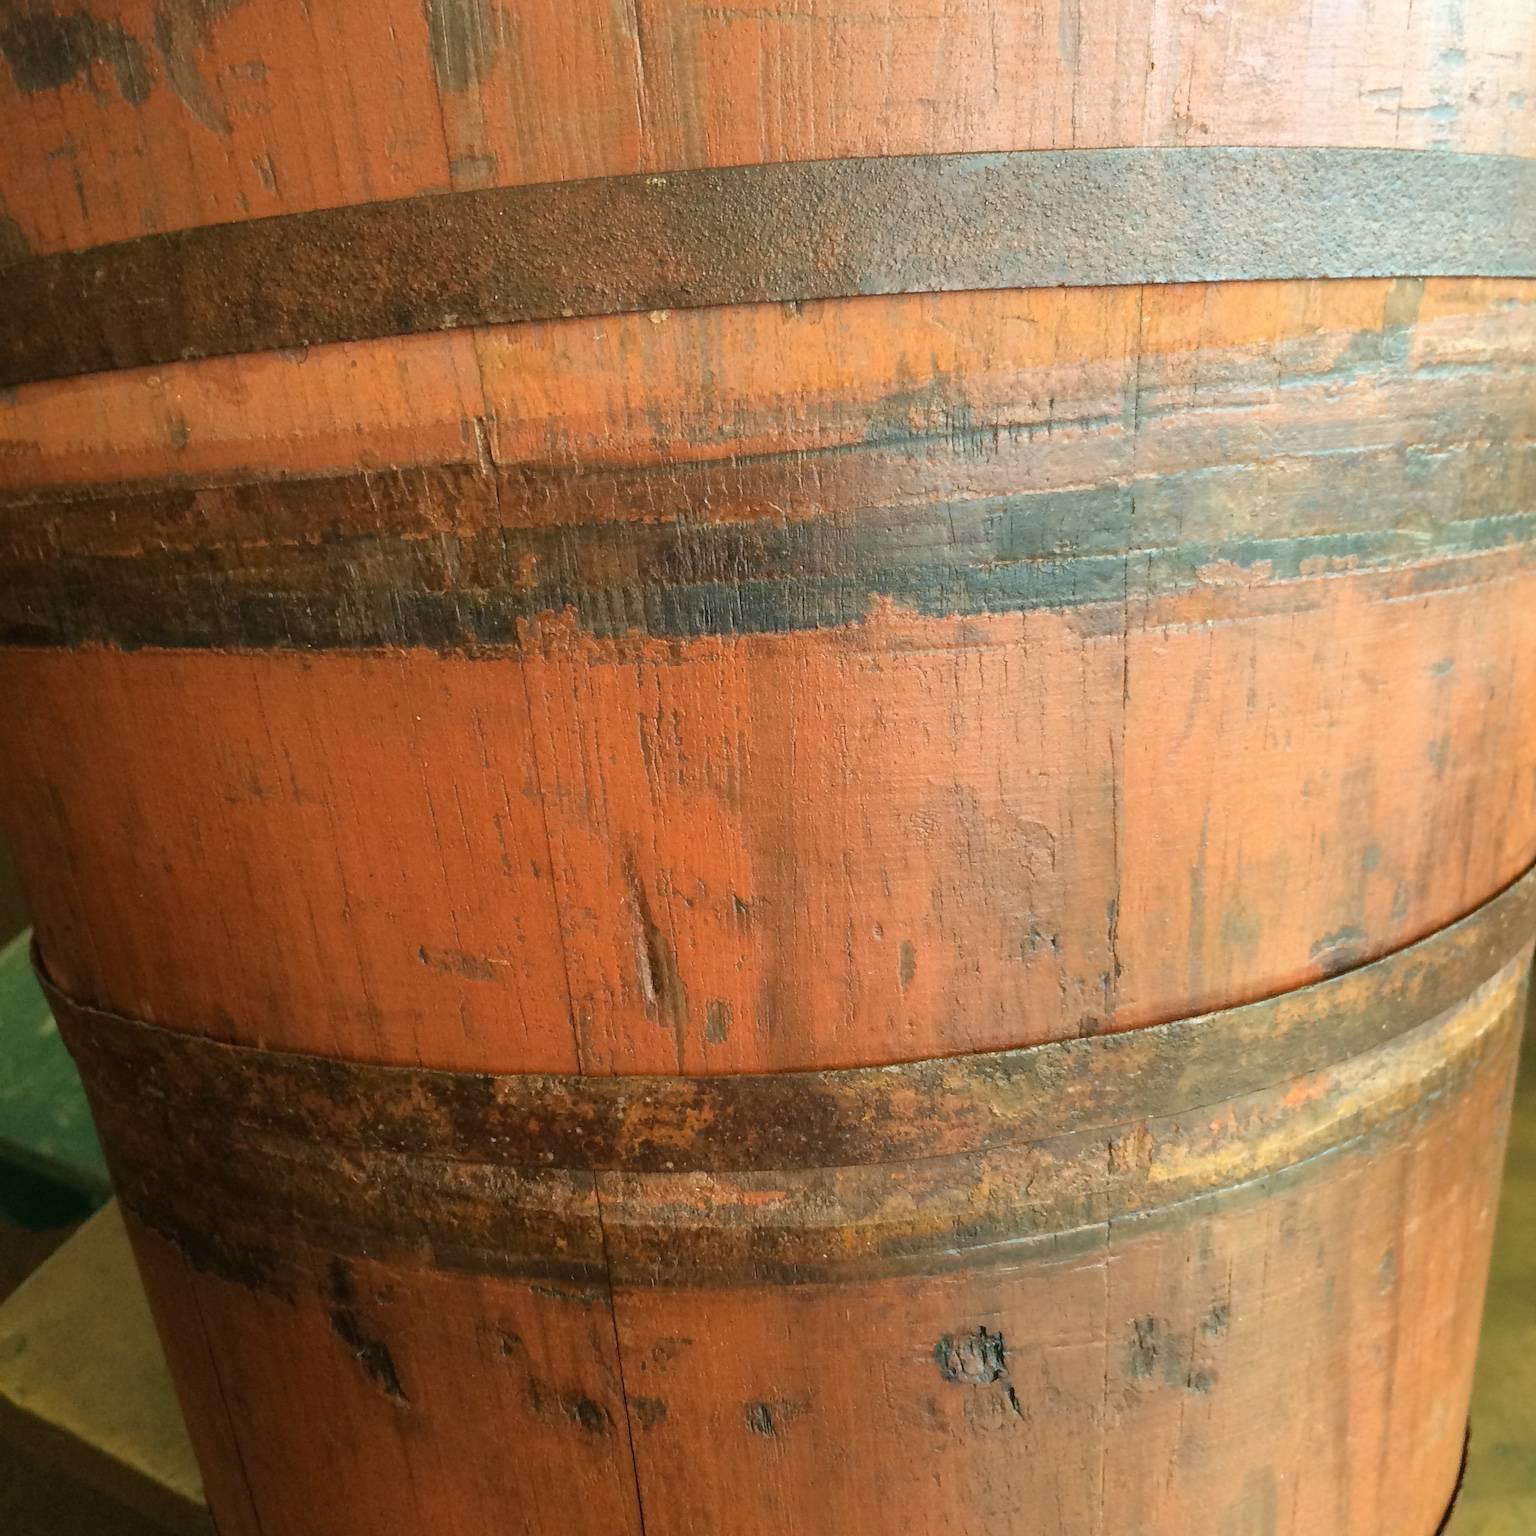 Folk Art Antique stave bucket in original red paint